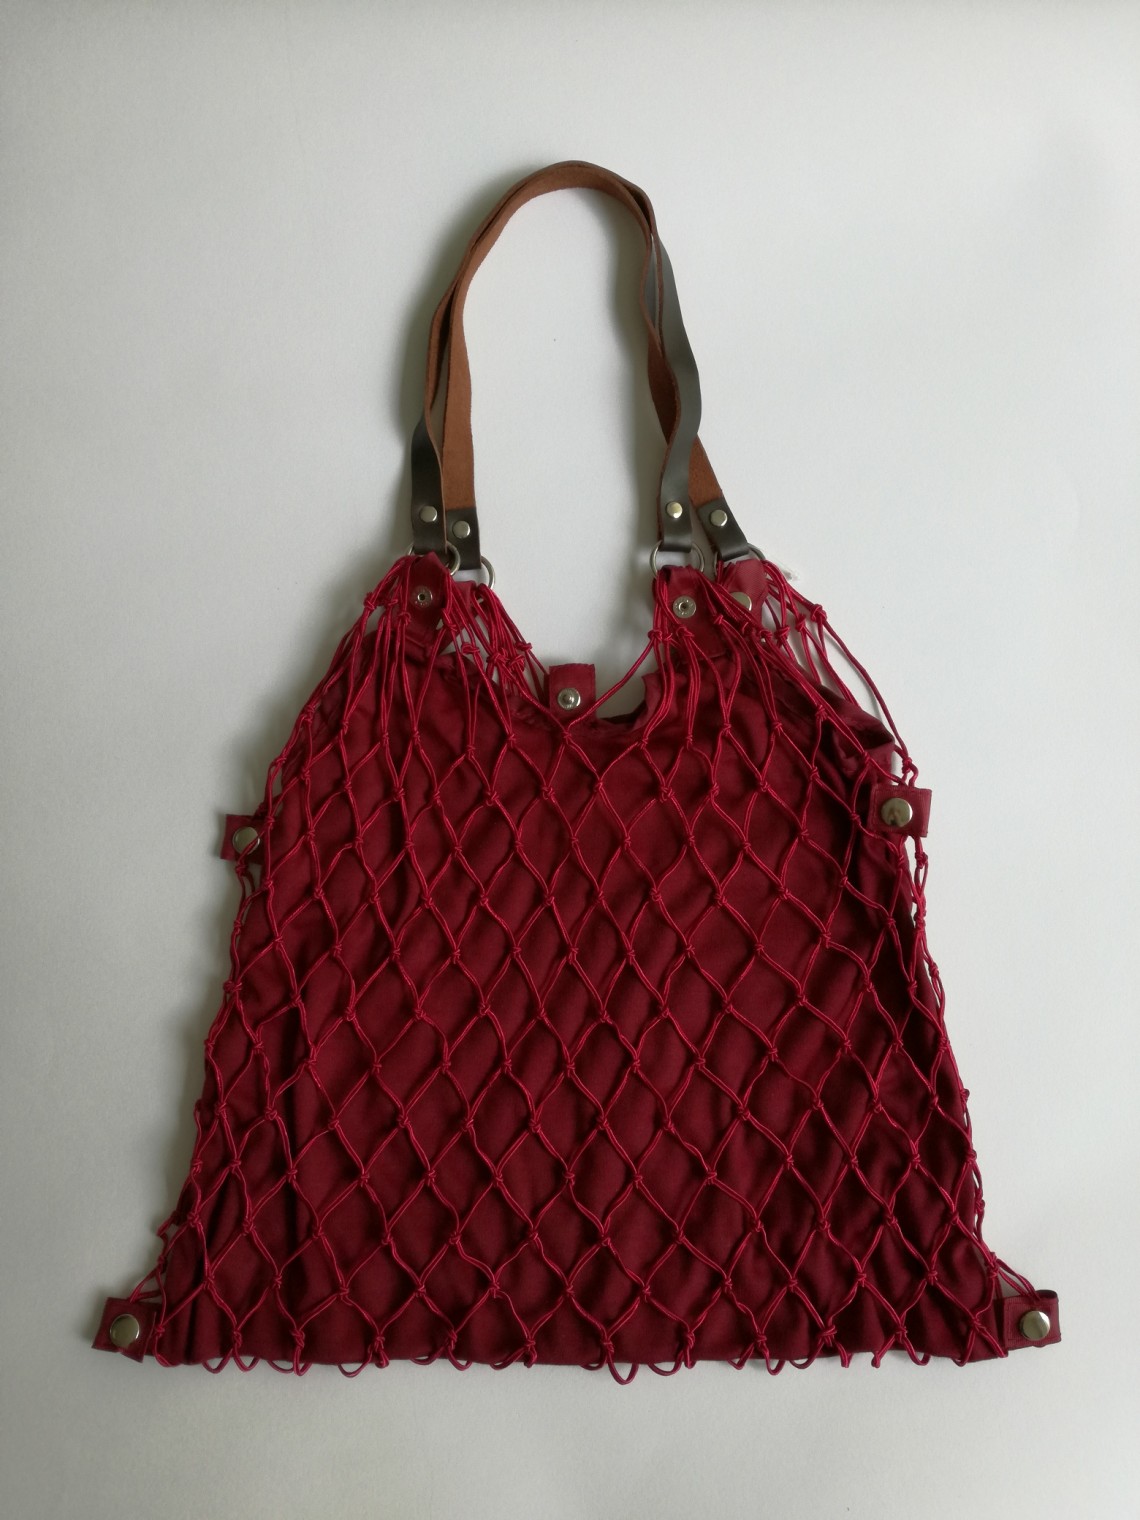 Tinklinis krepšys su įsegamu ir išsegamu tampriu audiniu raudonos spalvos - 2011854 de luxe rot/rot.  Kaina 19,90 €.